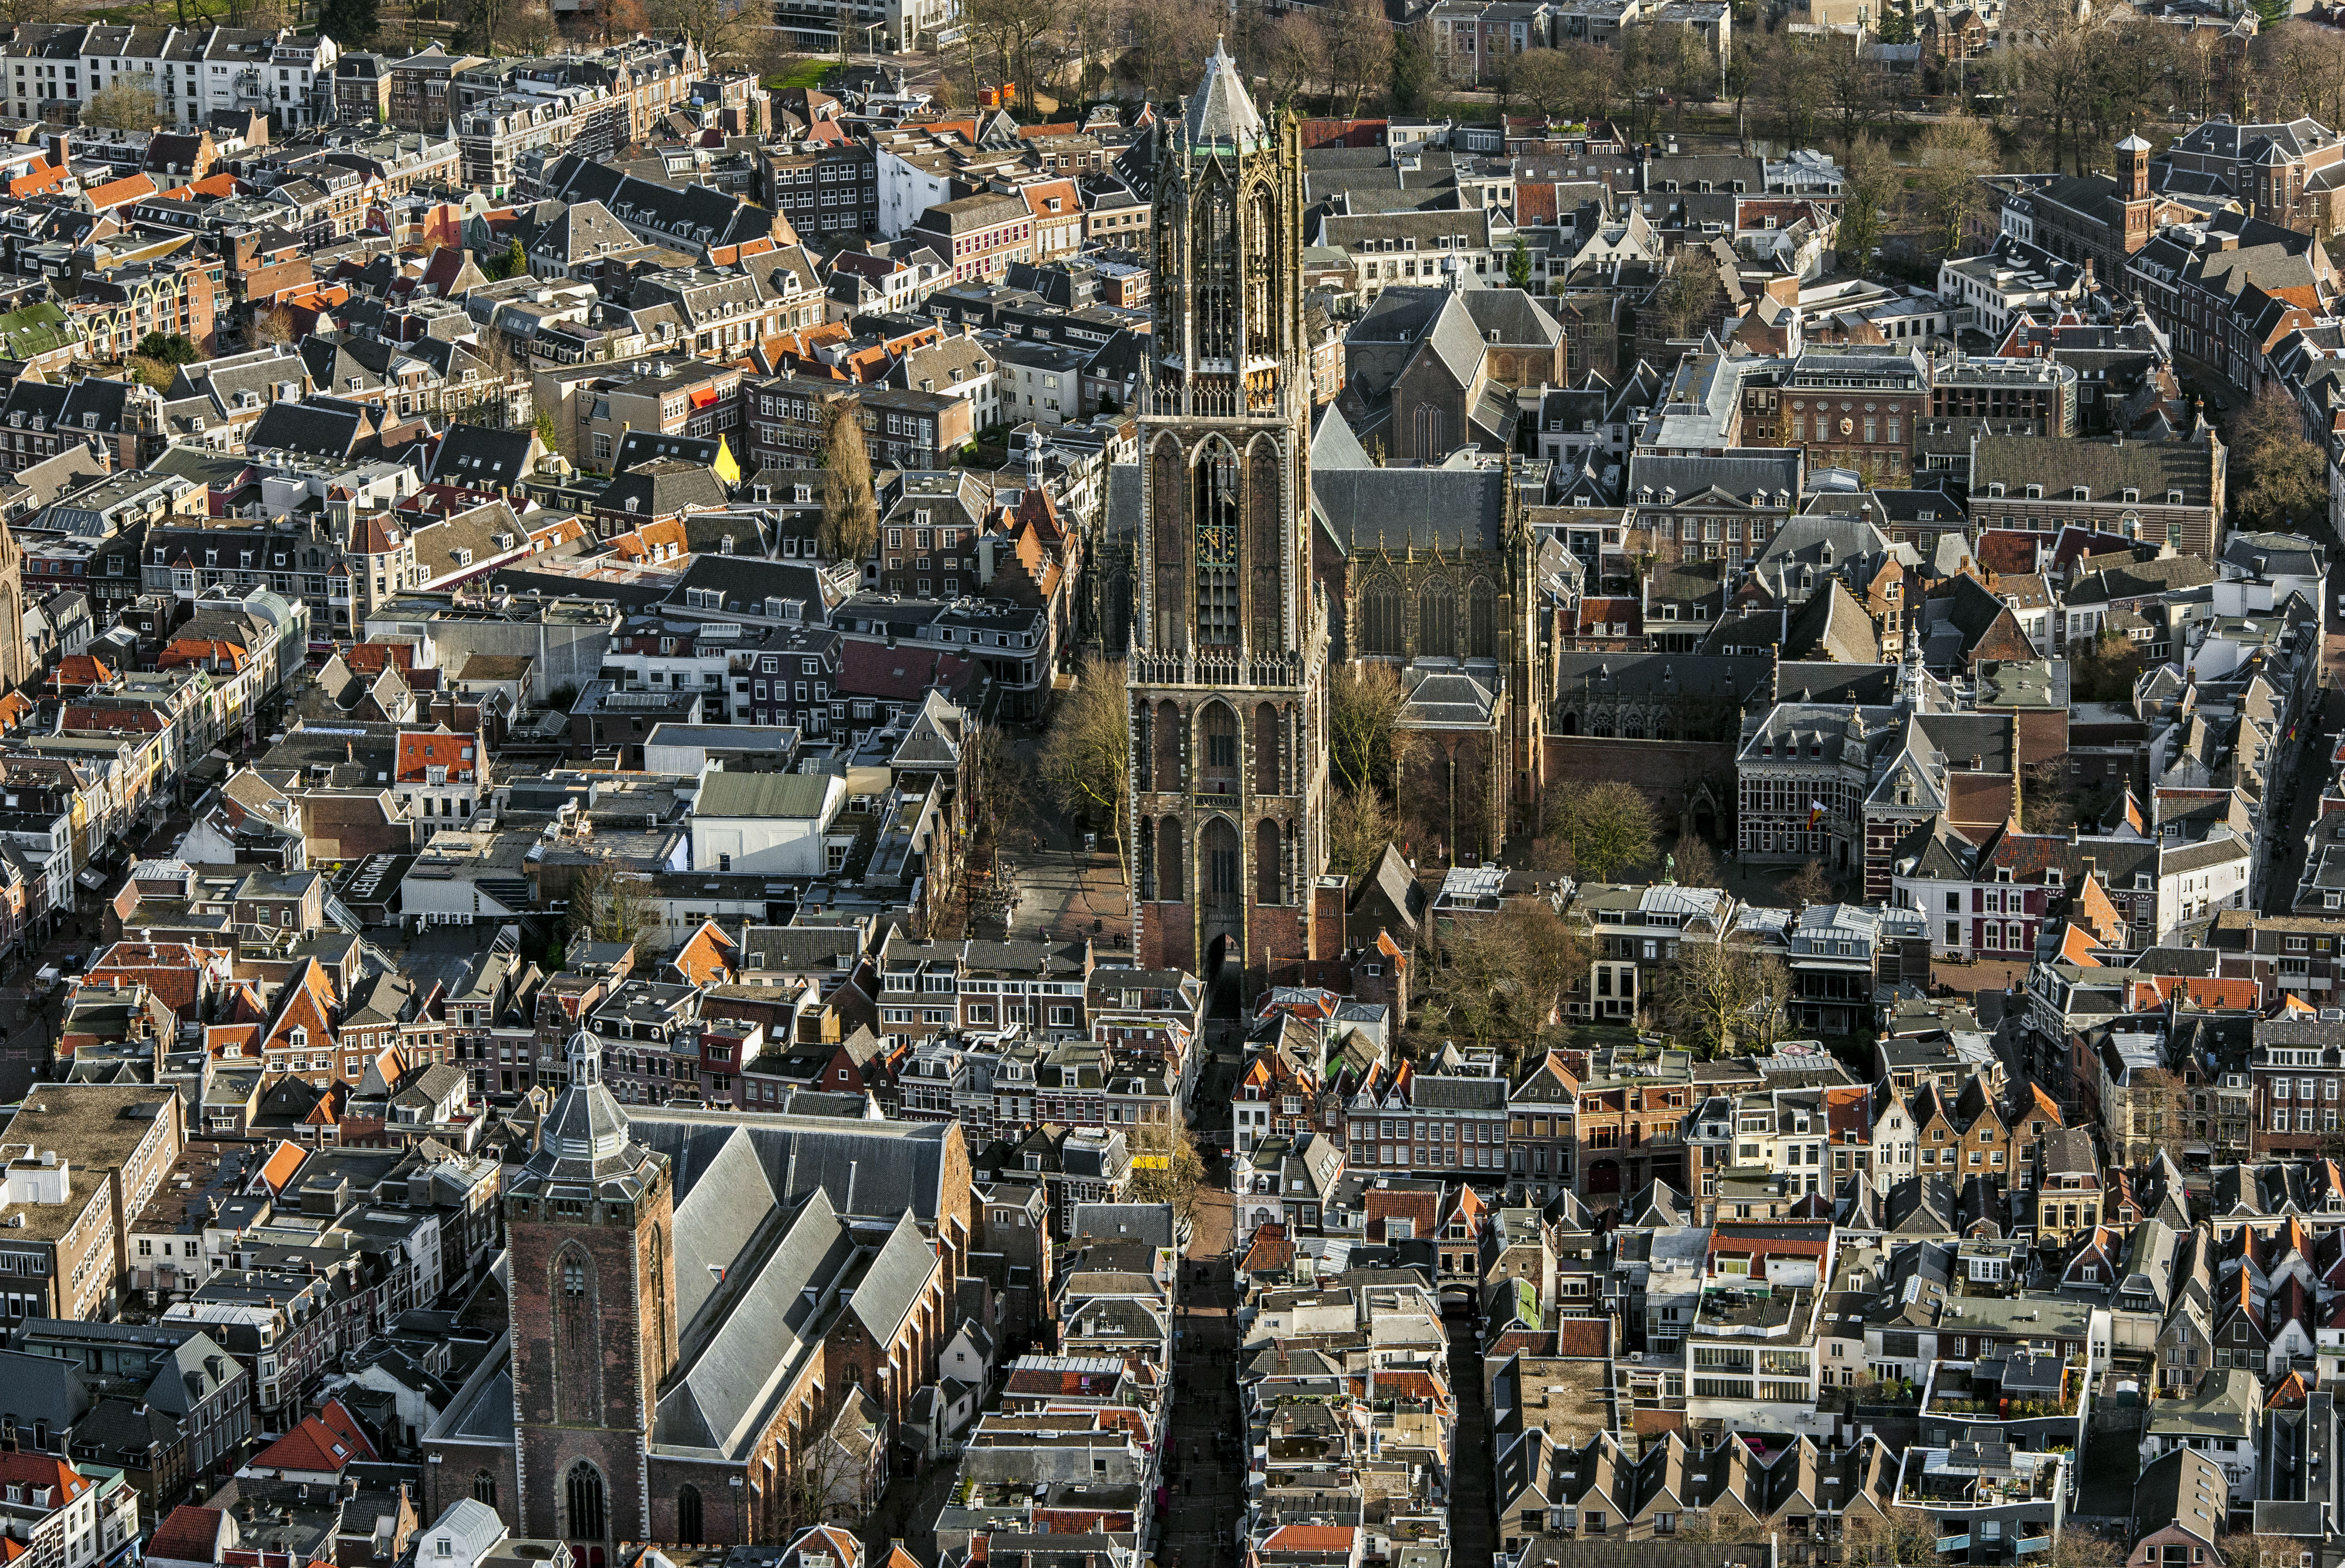 Gratis wifi in binnenstad Utrecht verdwijnt